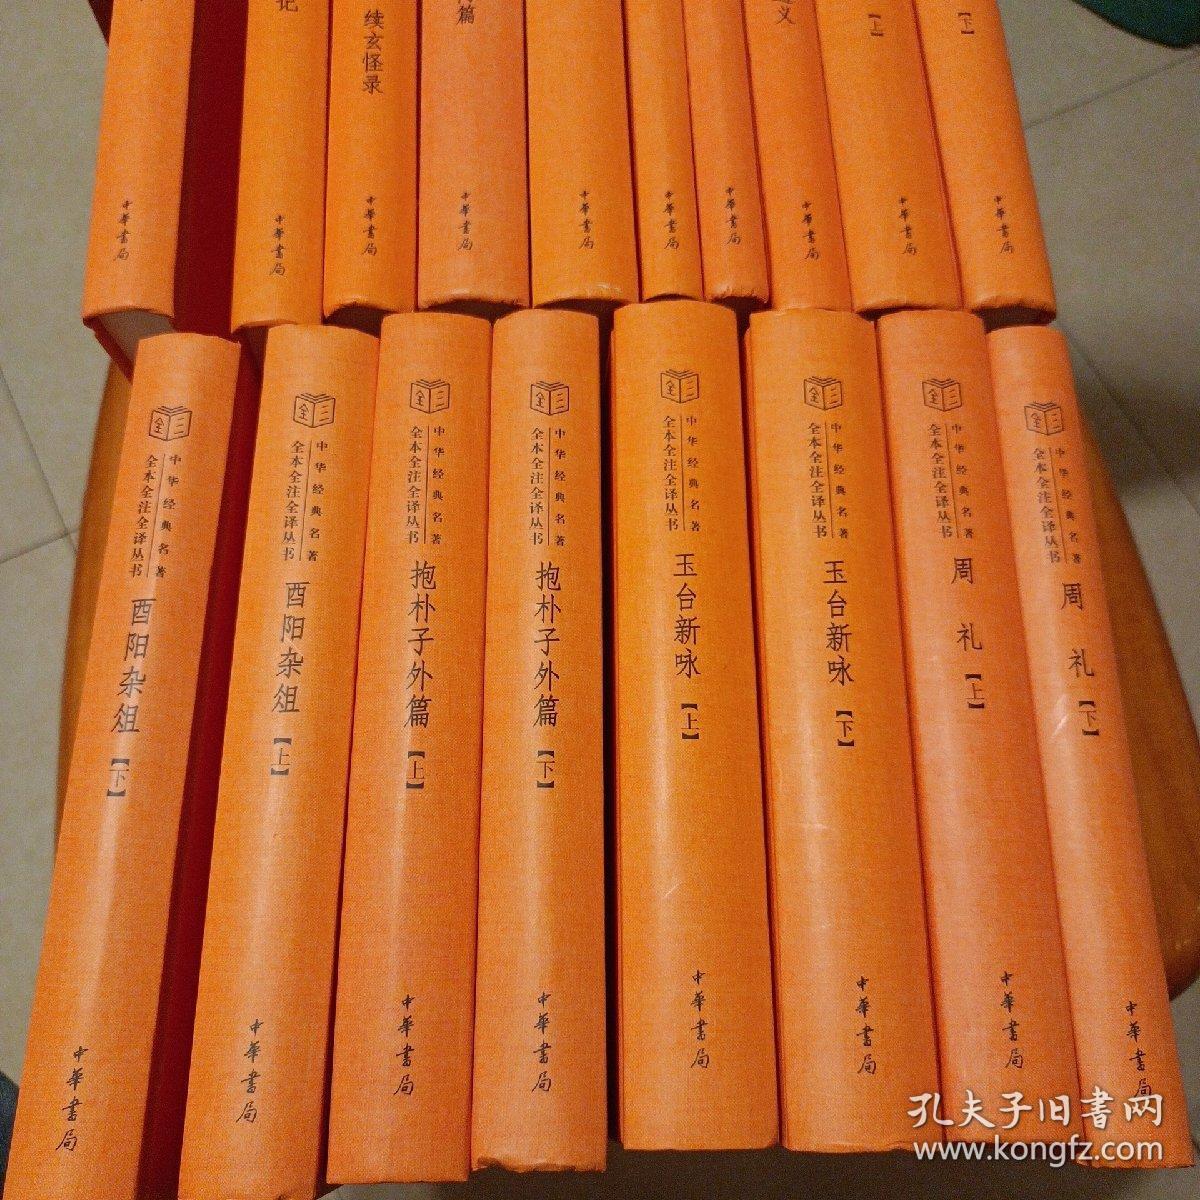 中华经典名著全本全注全译丛书18本合售